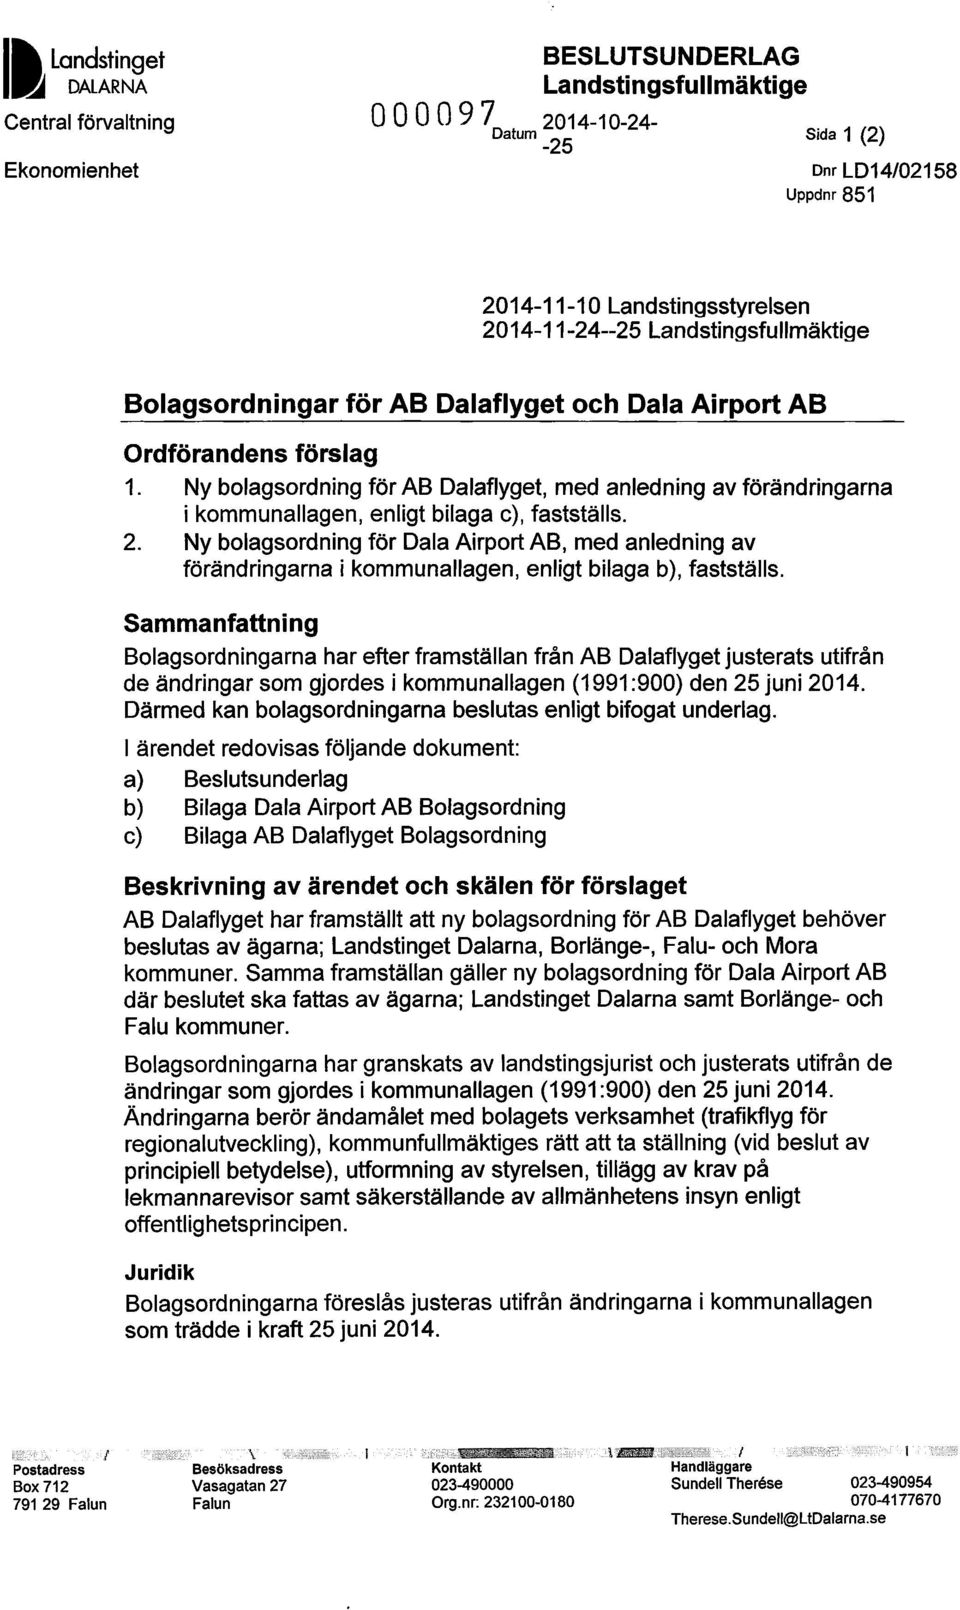 Ny bolagsordning för AB Dalaflyget, med anledning av förändringarna i kommunallagen, enligt bilaga c), fastställs. 2.